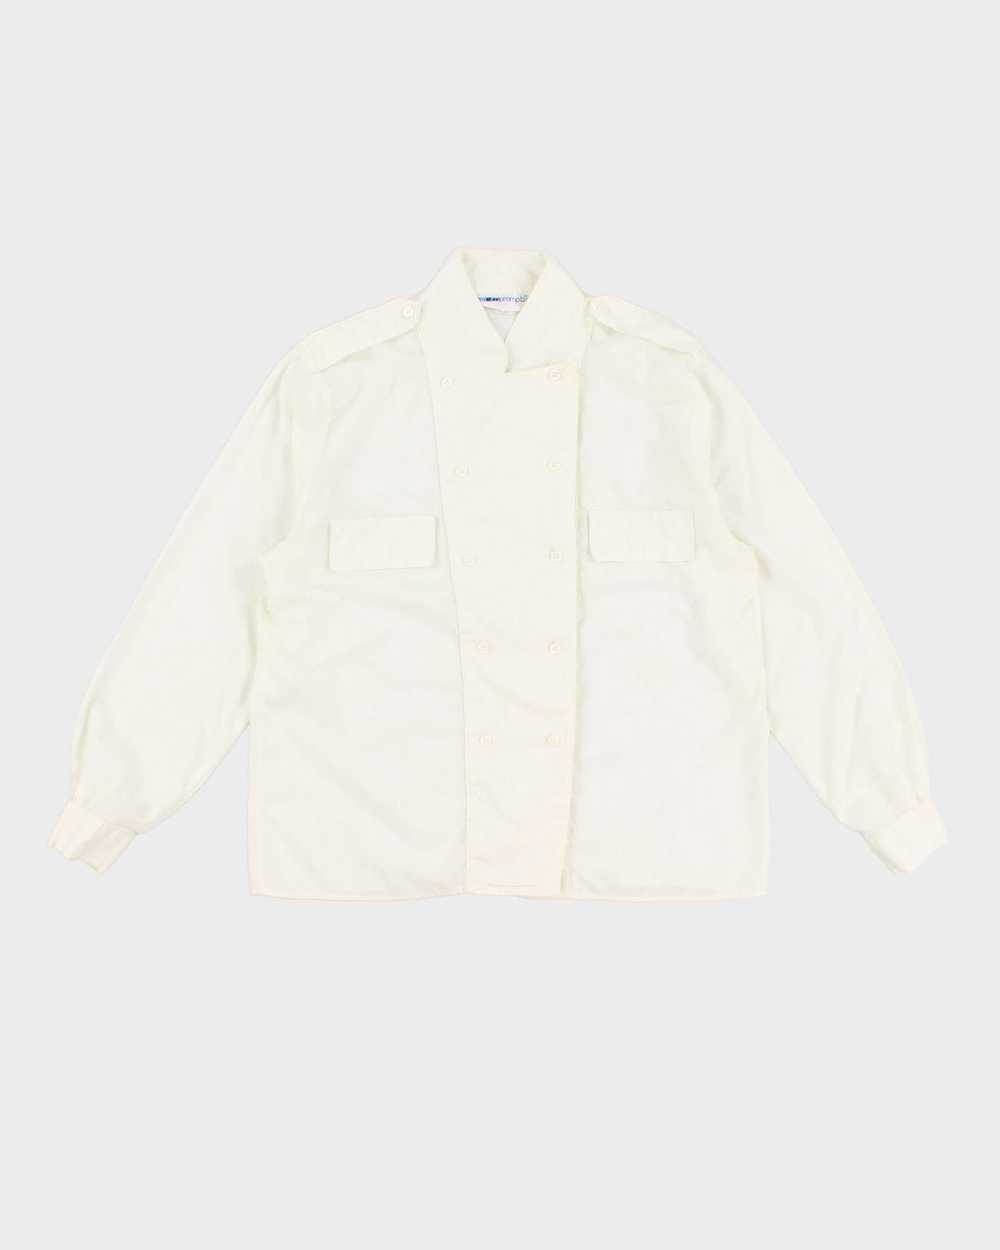 Vintage 80s Impromptu White Long Sleeved Shirt - L - image 1